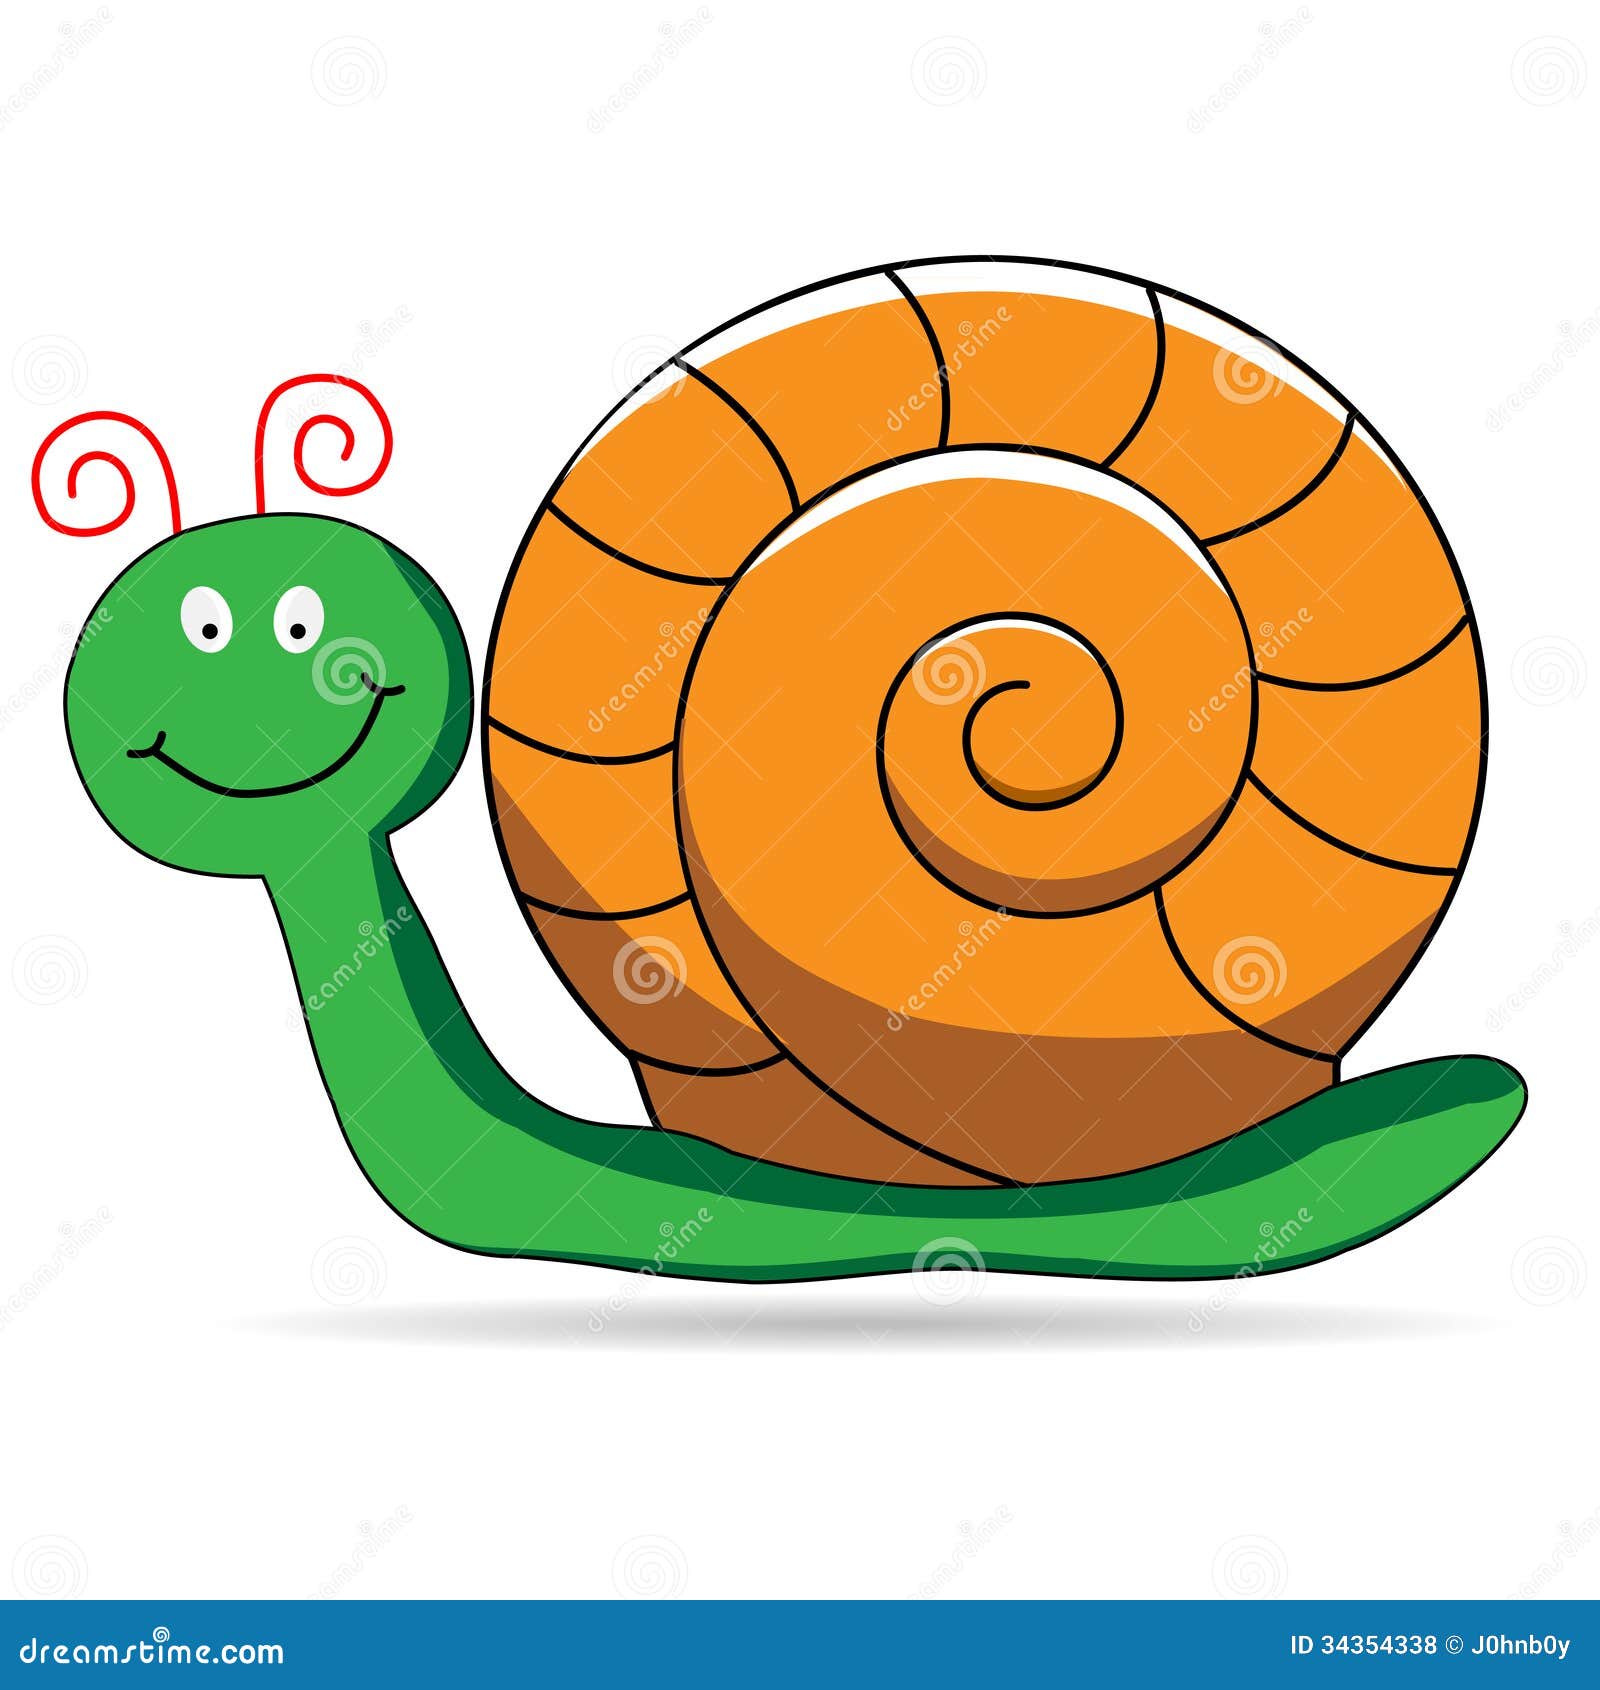 Snail Images Cartoon - 14,146 snail clip art images on gograph